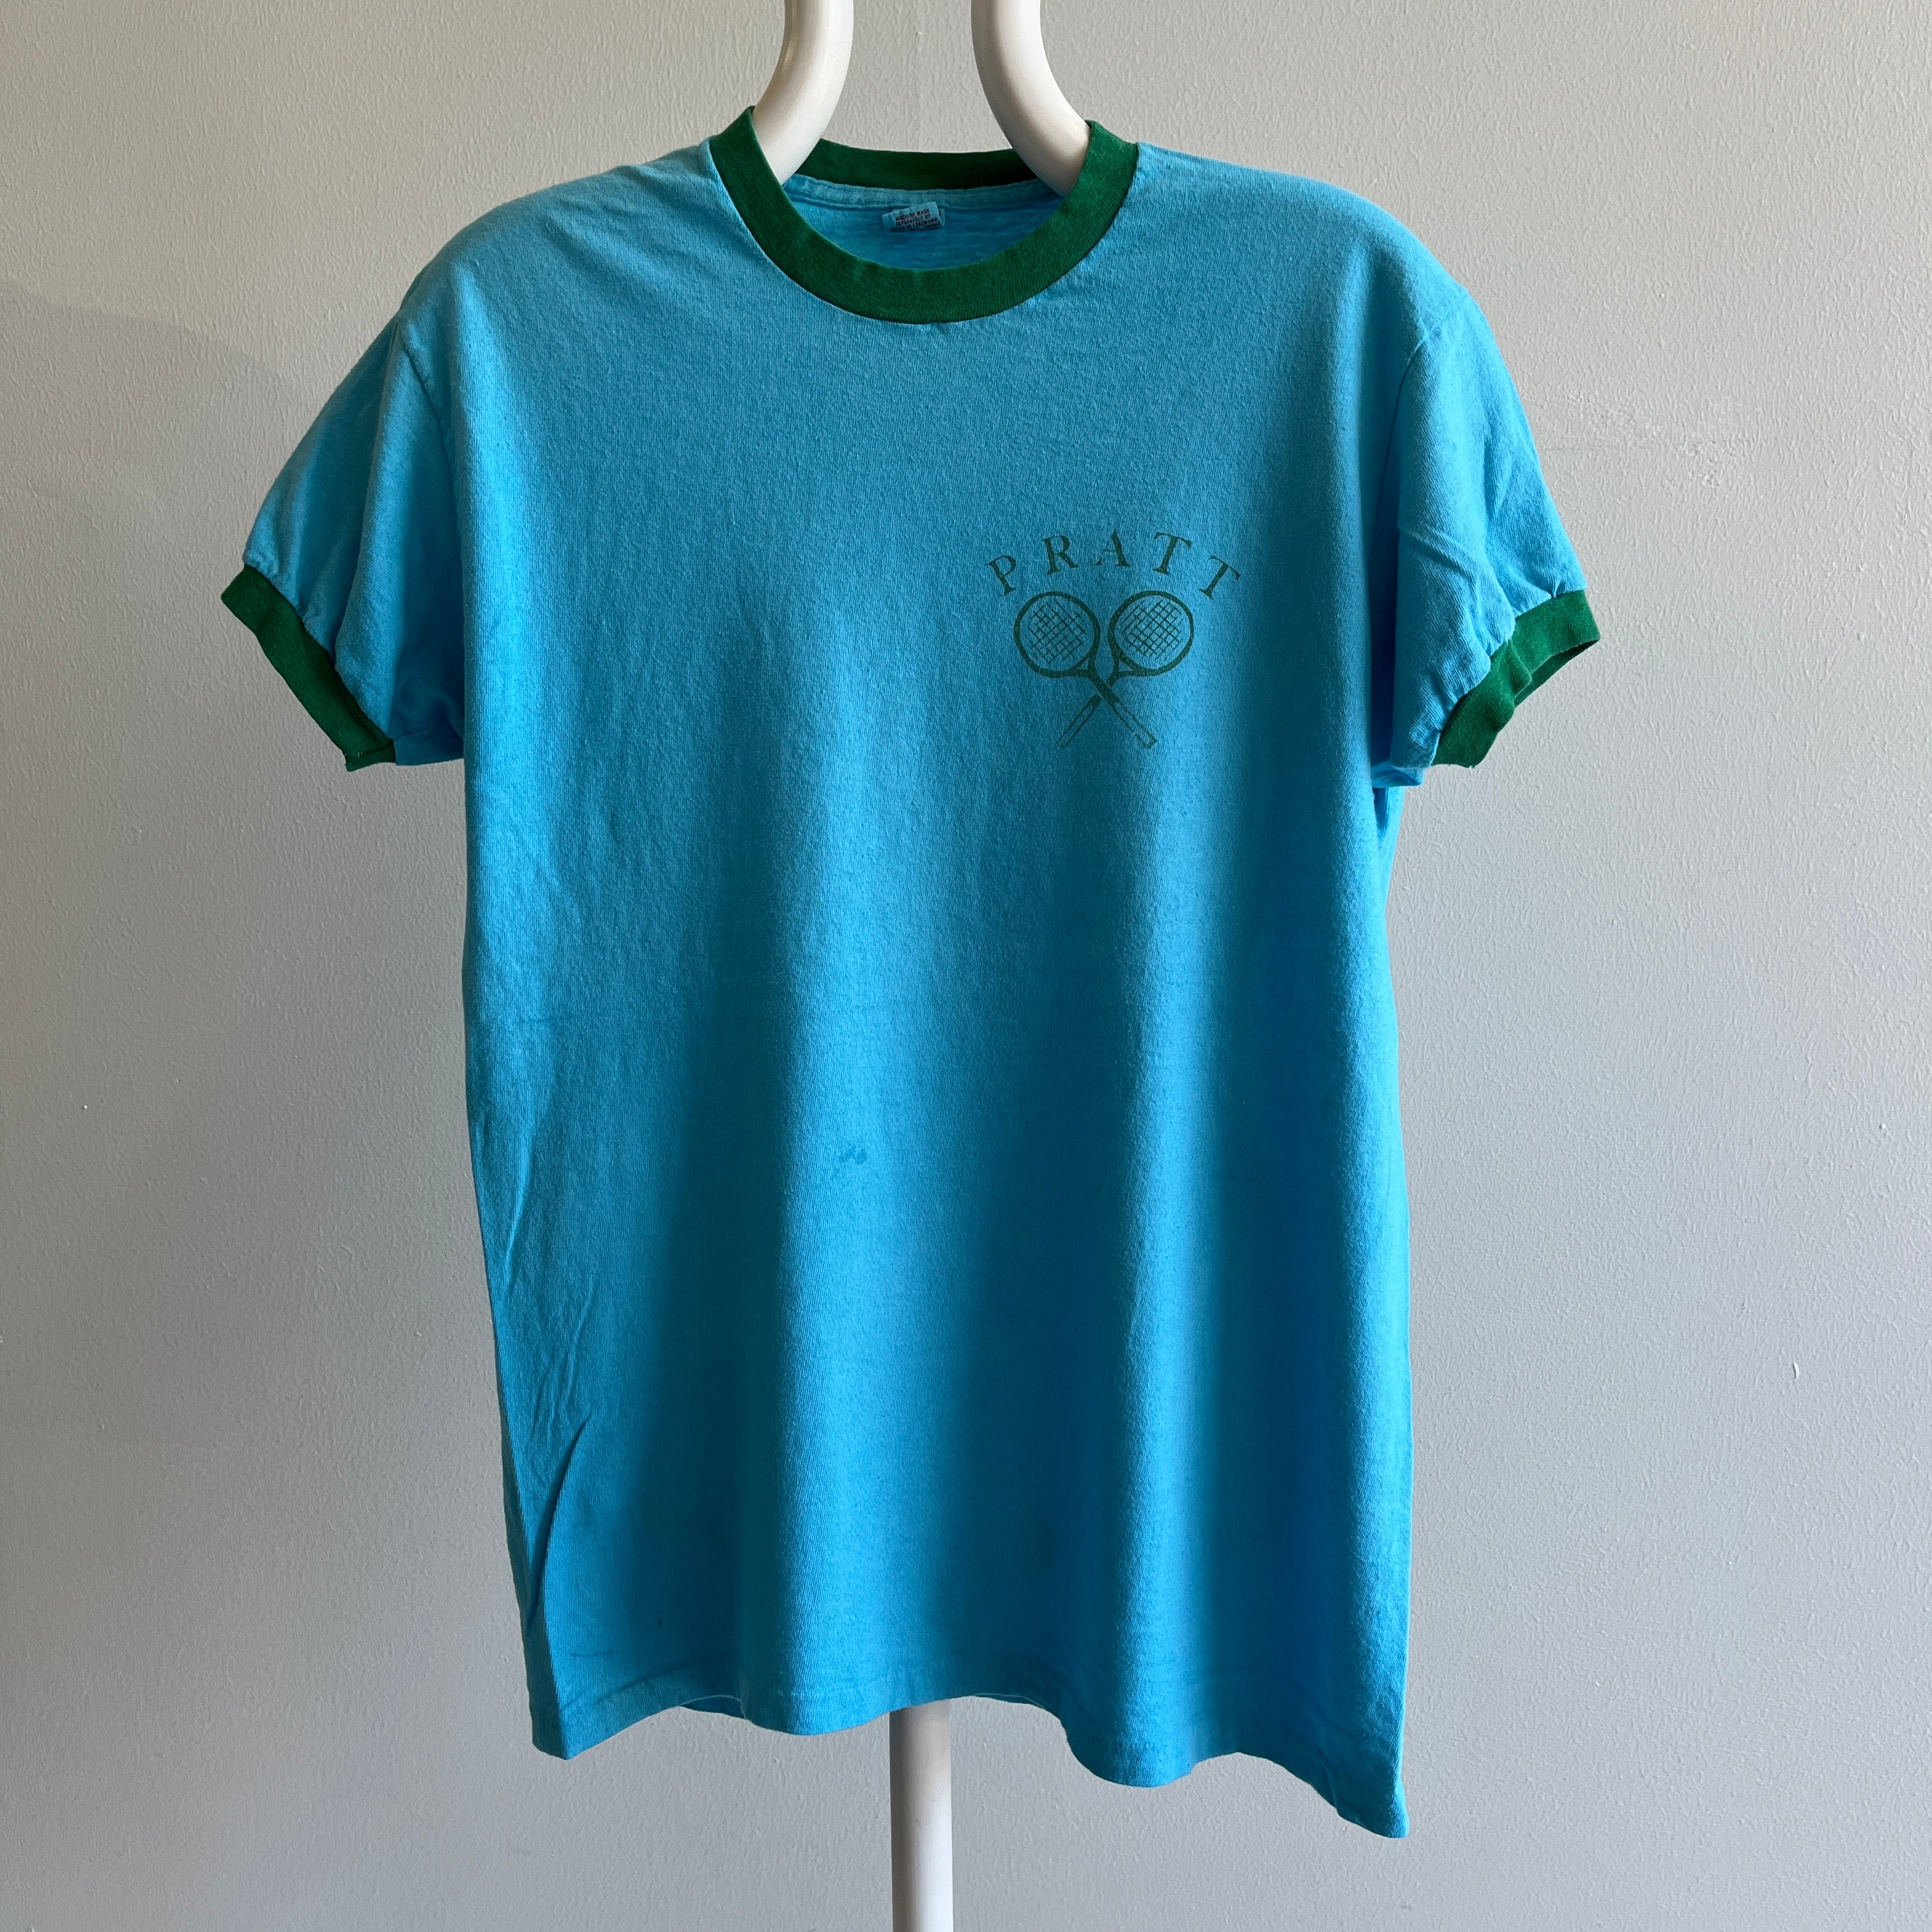 T-shirt à anneaux du club de tennis de l'université ReDyed Pratt des années 1970 - LOVE IT!